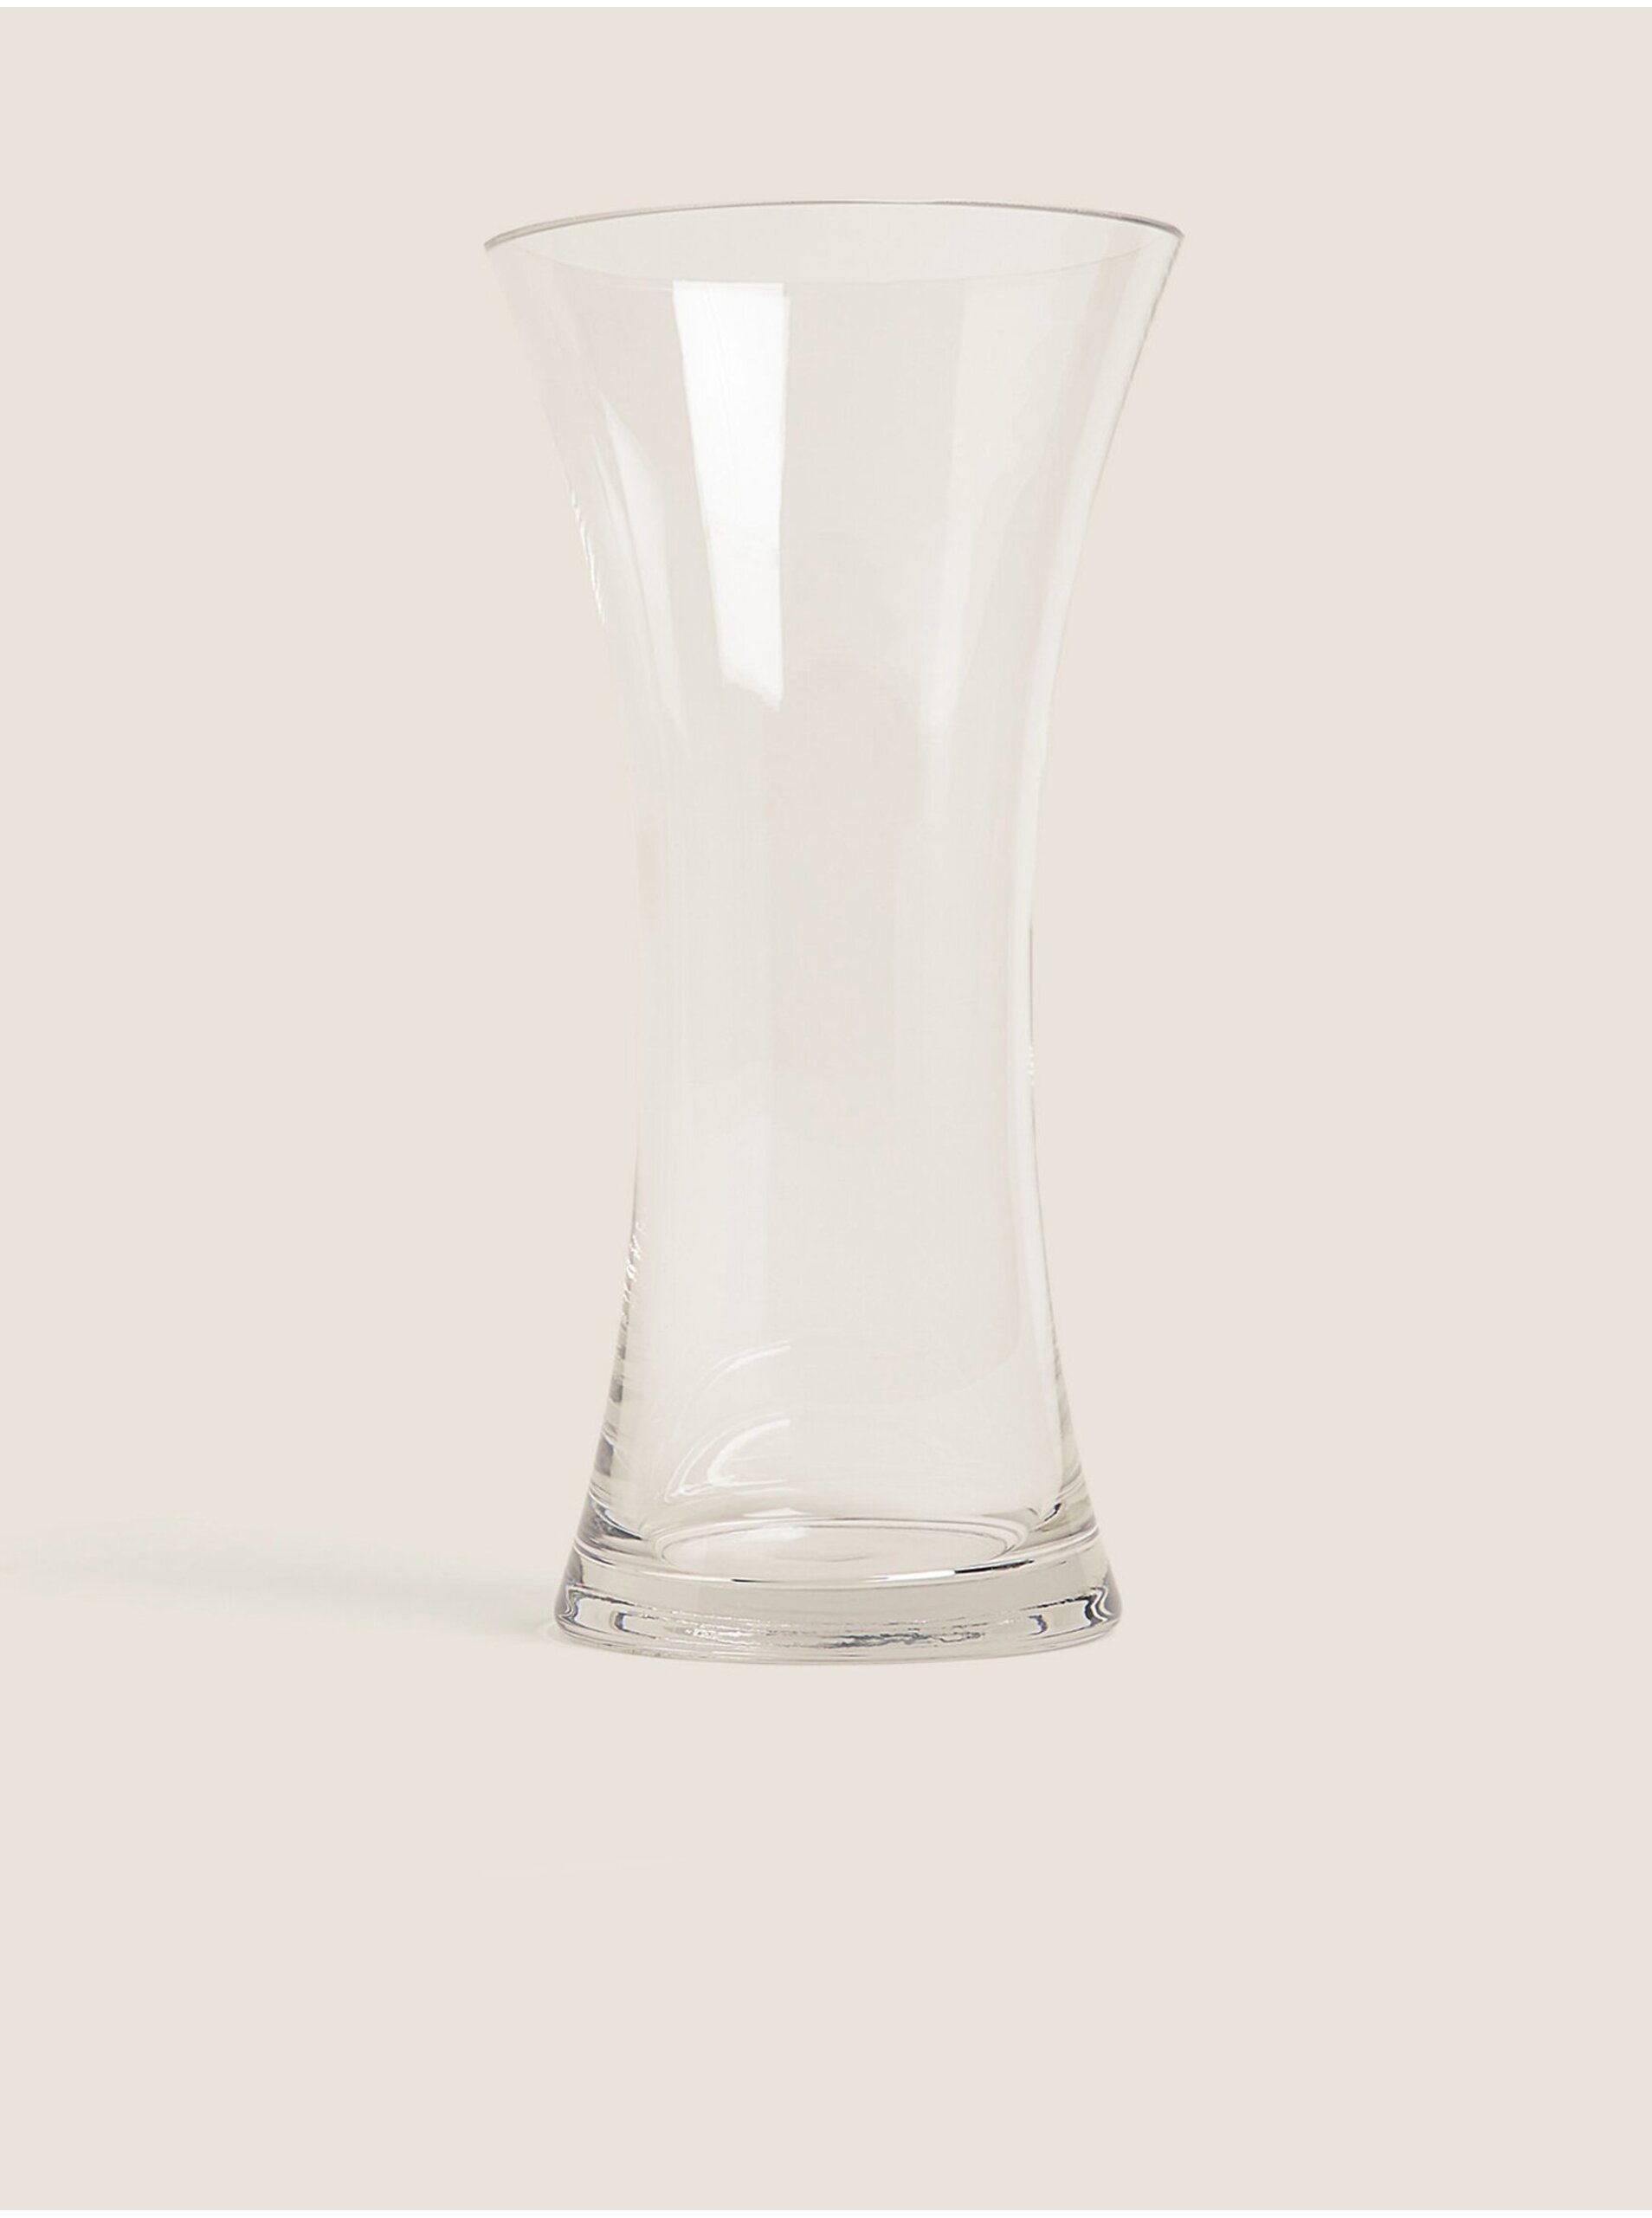 Lacno Transparentná sklenená váza Marks & Spencer